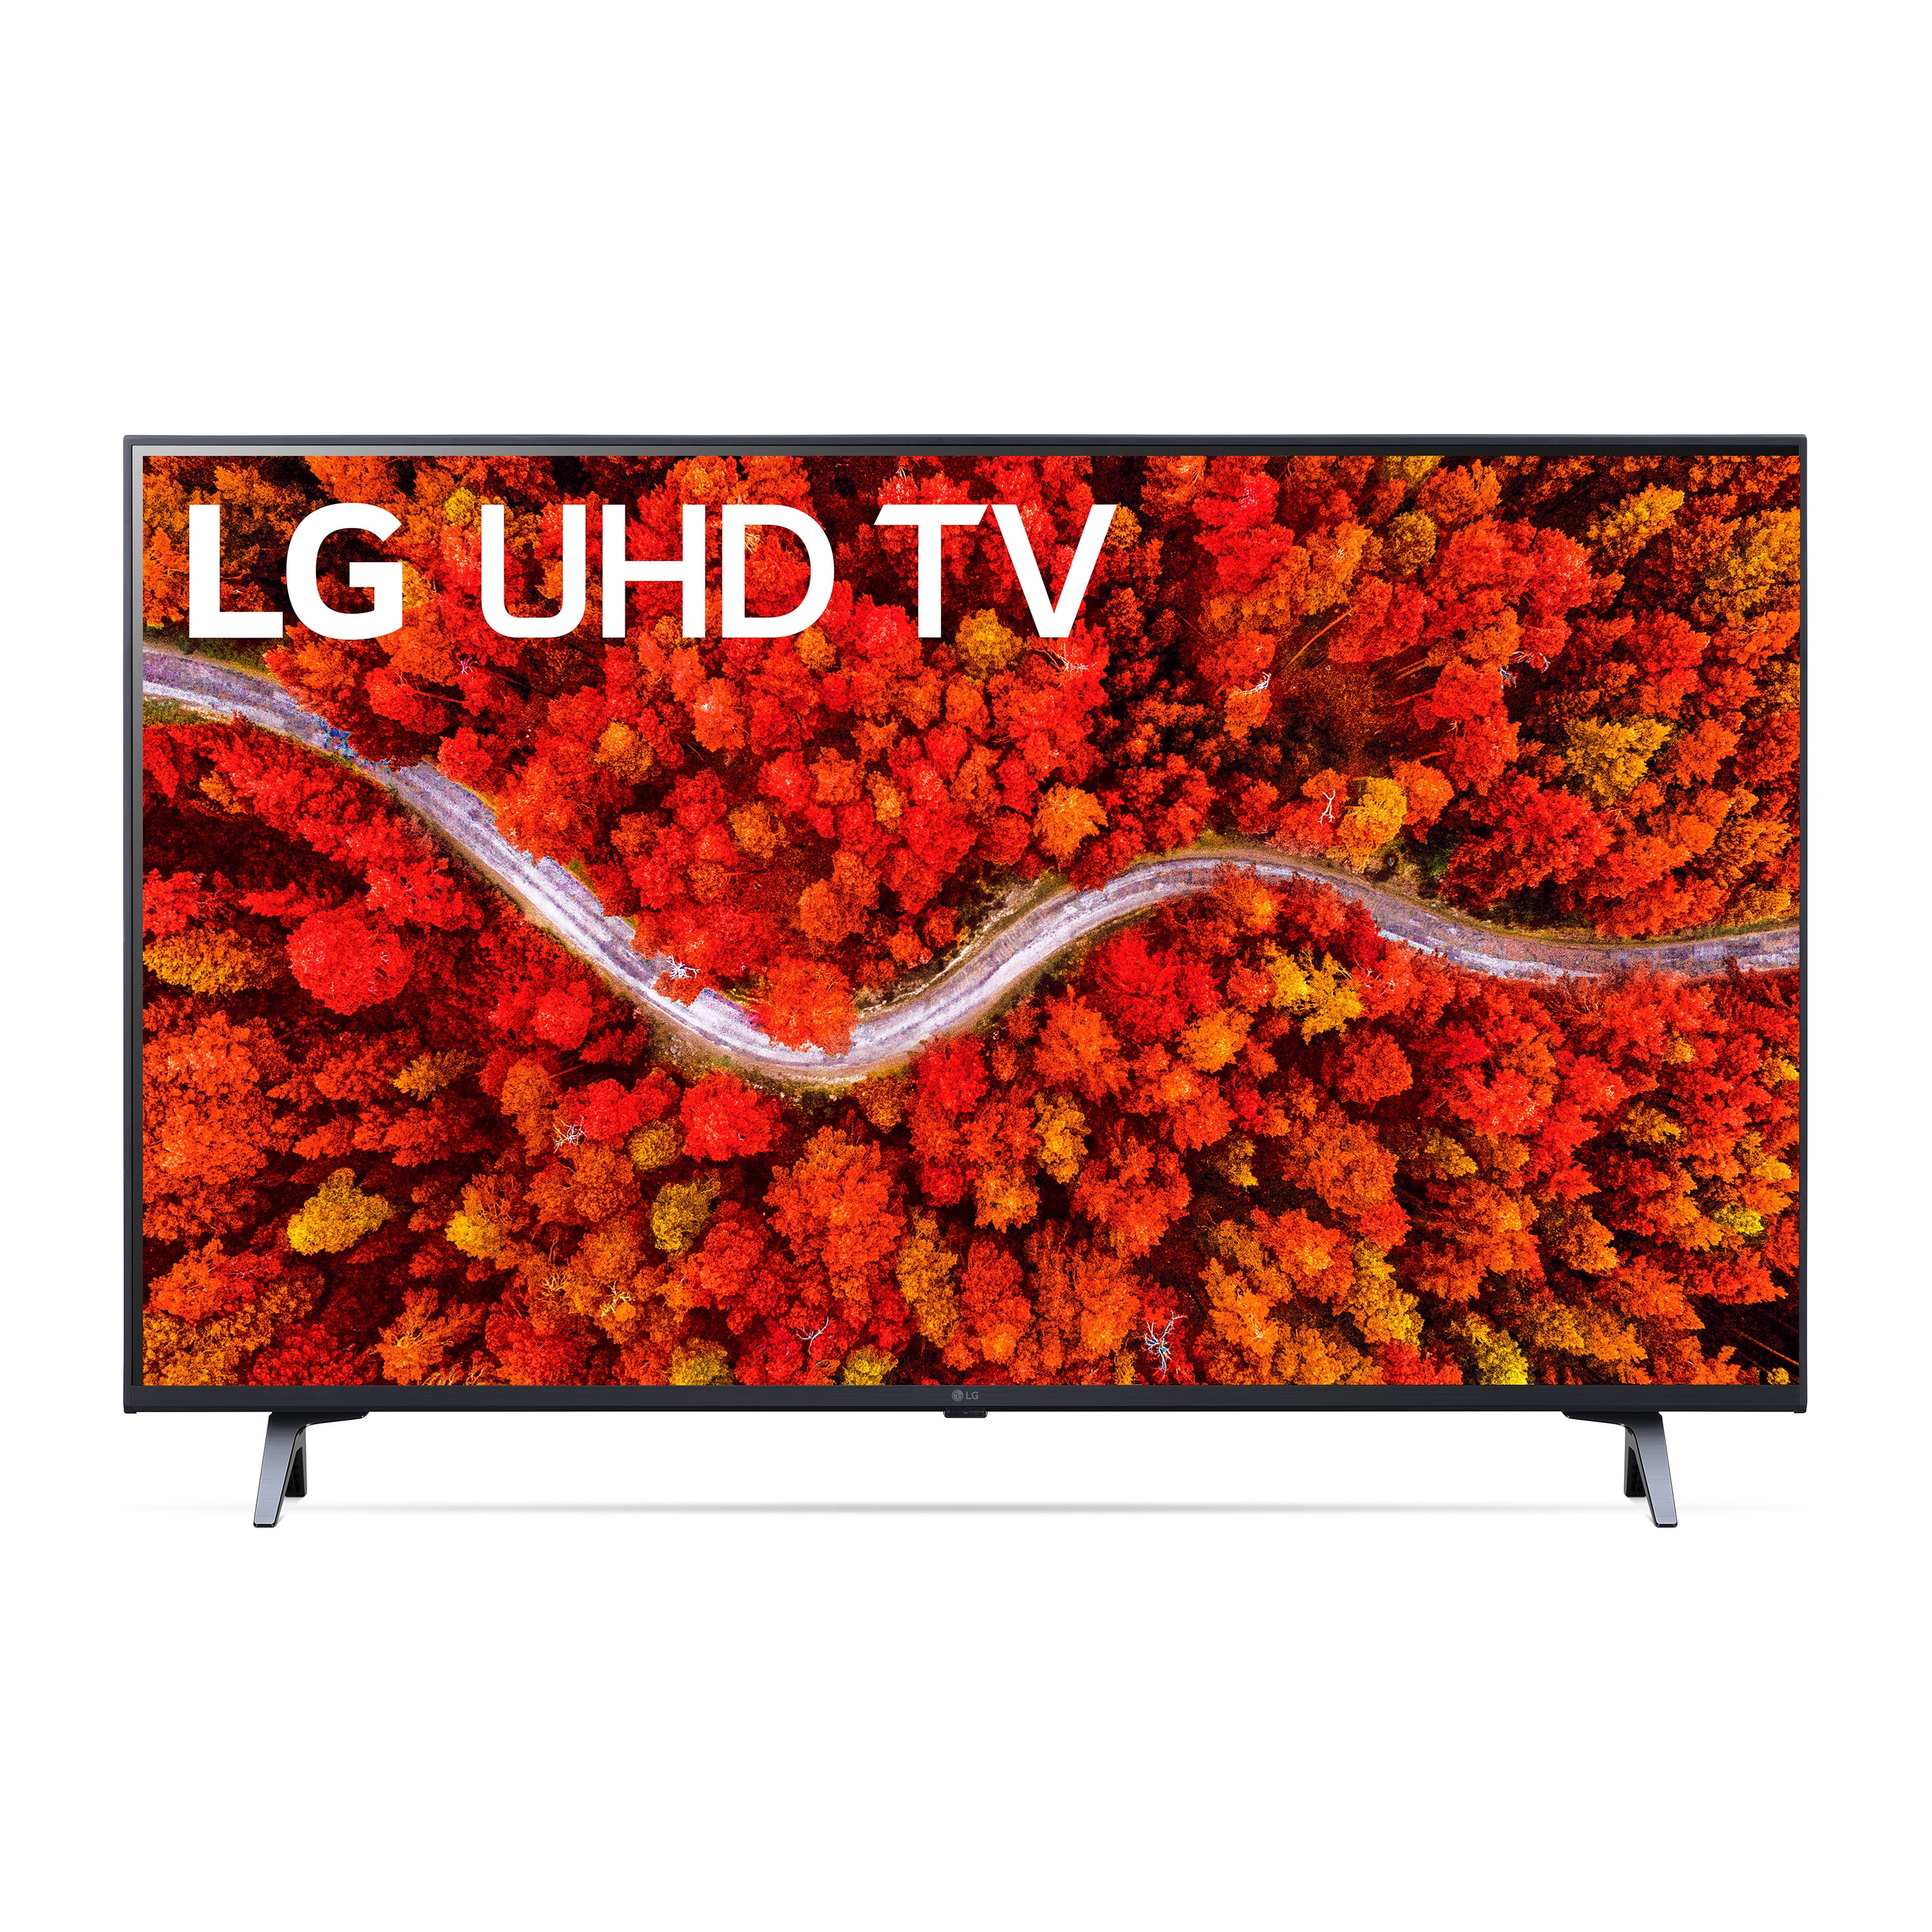 LG I 43 INCH I 4K UHD LED I SMART TV - Rangs Electronics Ltd.